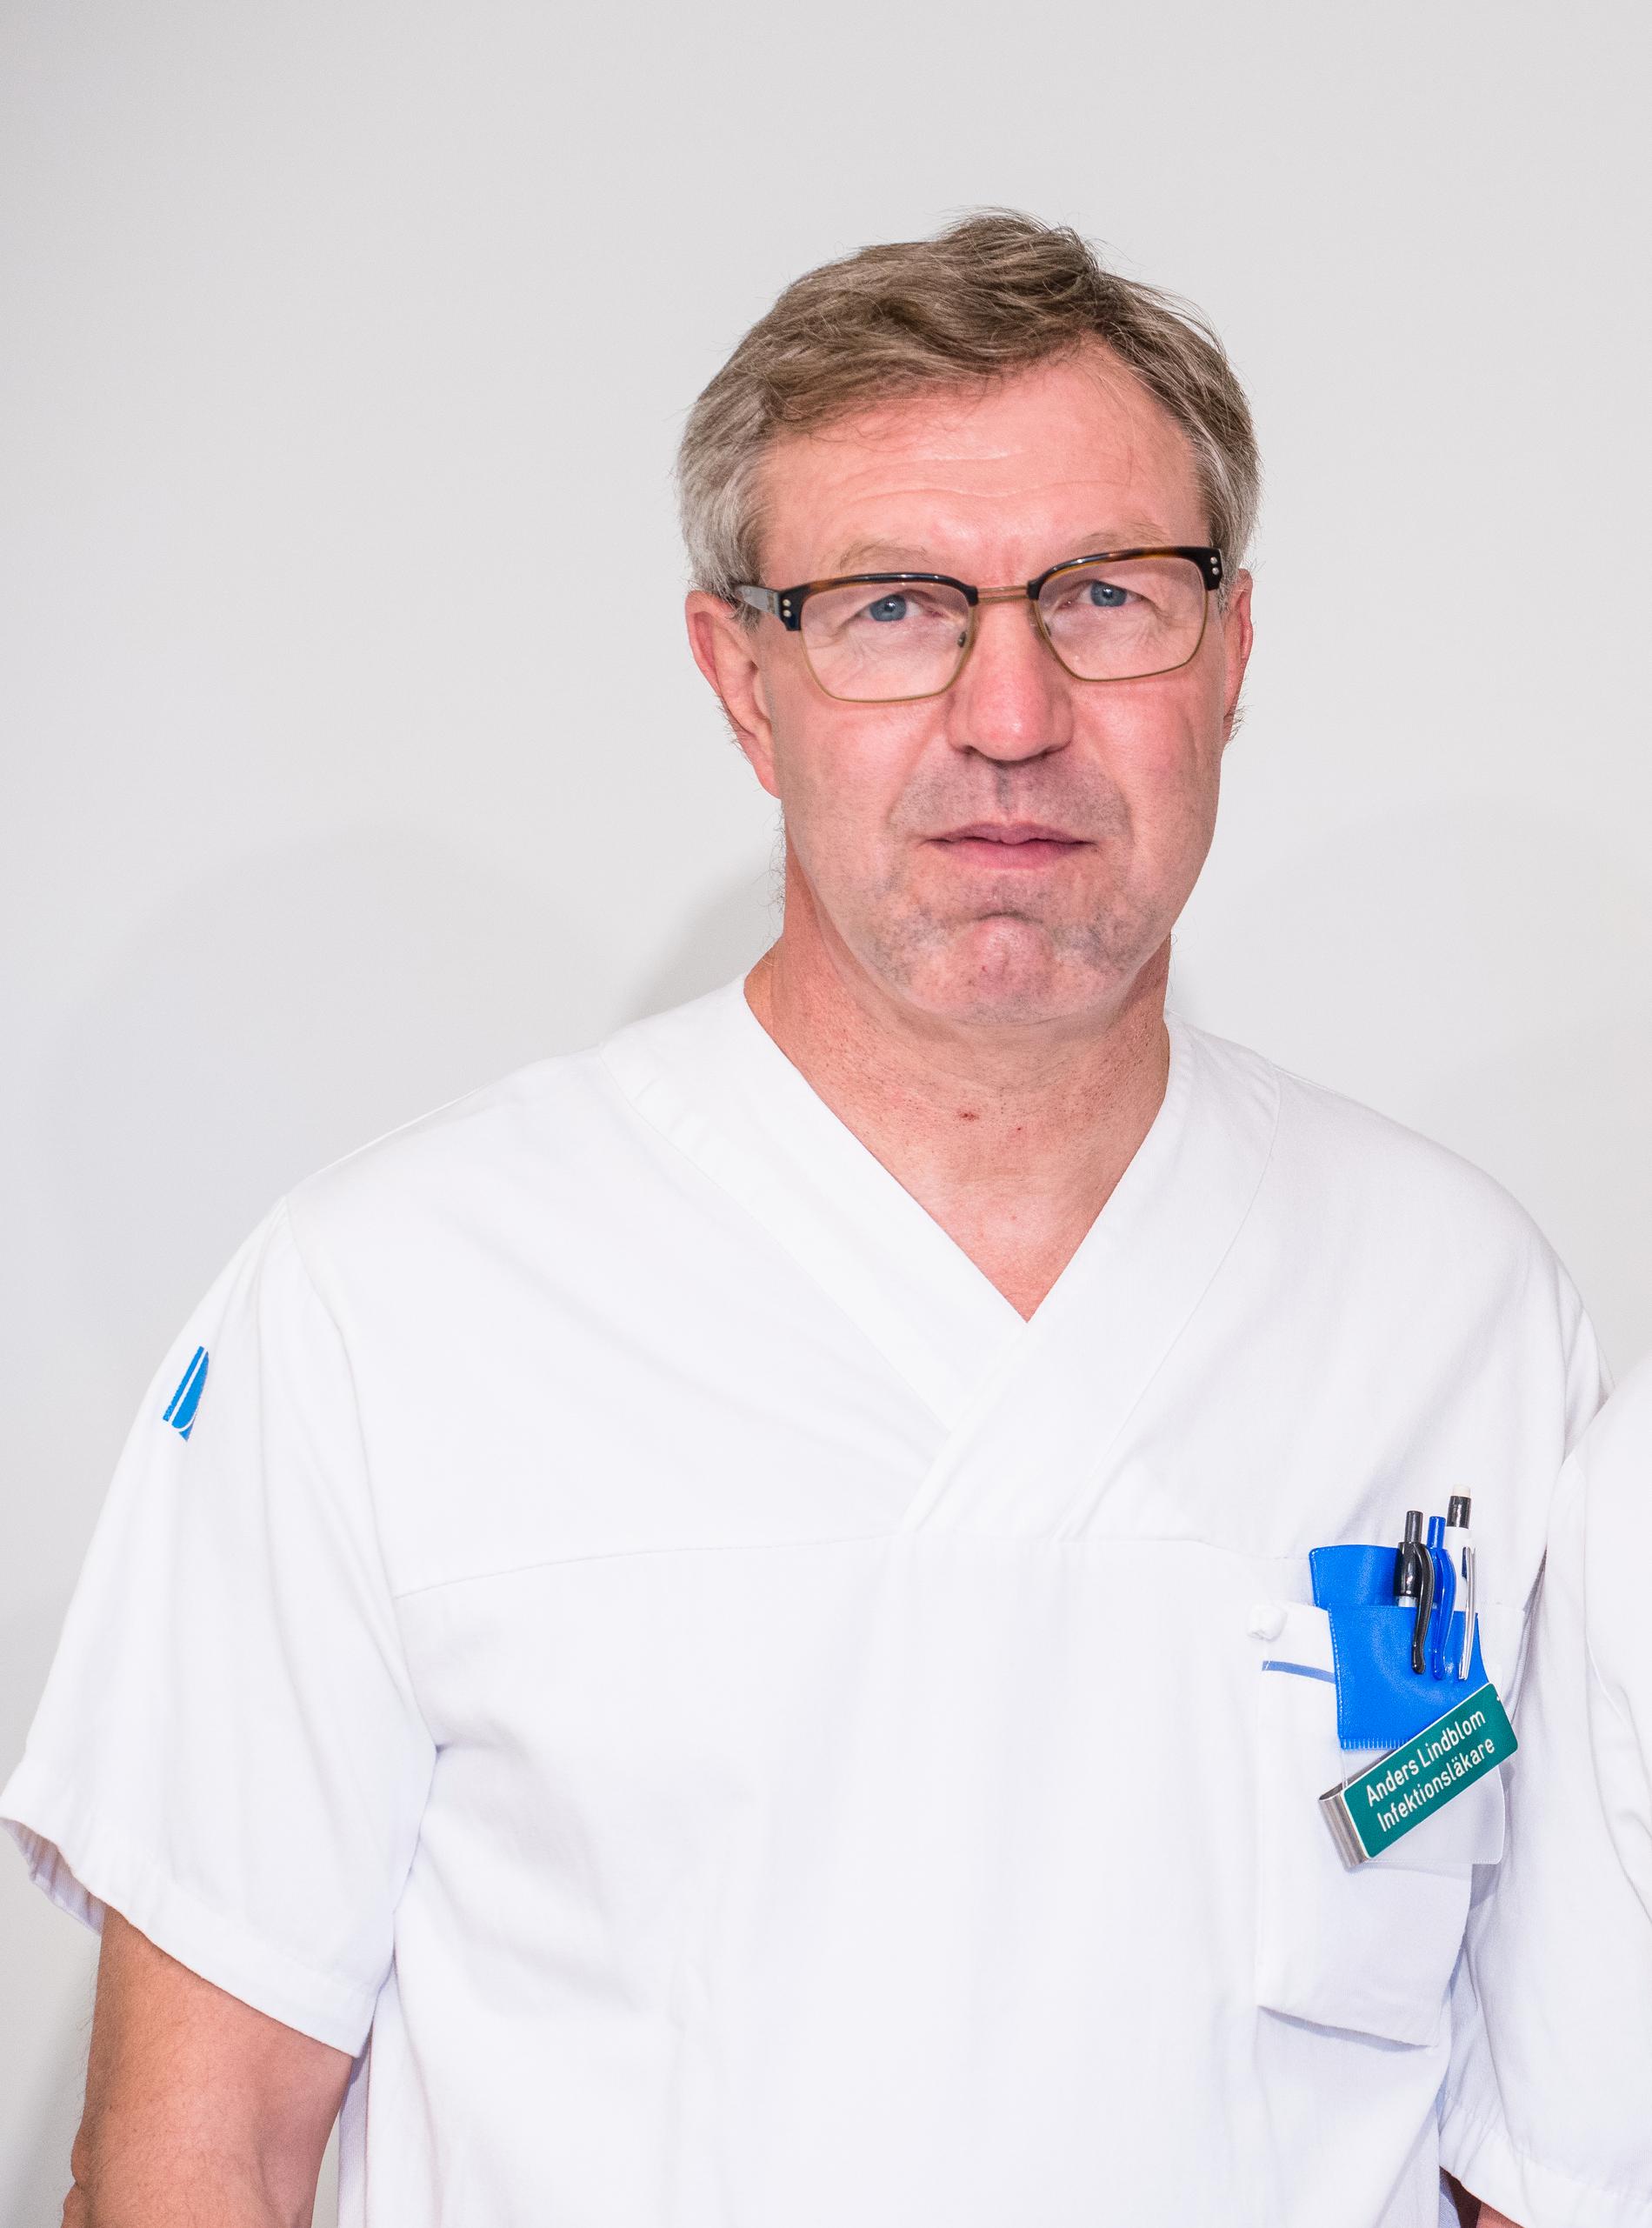 Ny statsepidemiolog blir Anders Lindblom, tidigare smittskyddsläkare och arbetar i dag vid avdelningen för smittskydd och hälsoskydd.